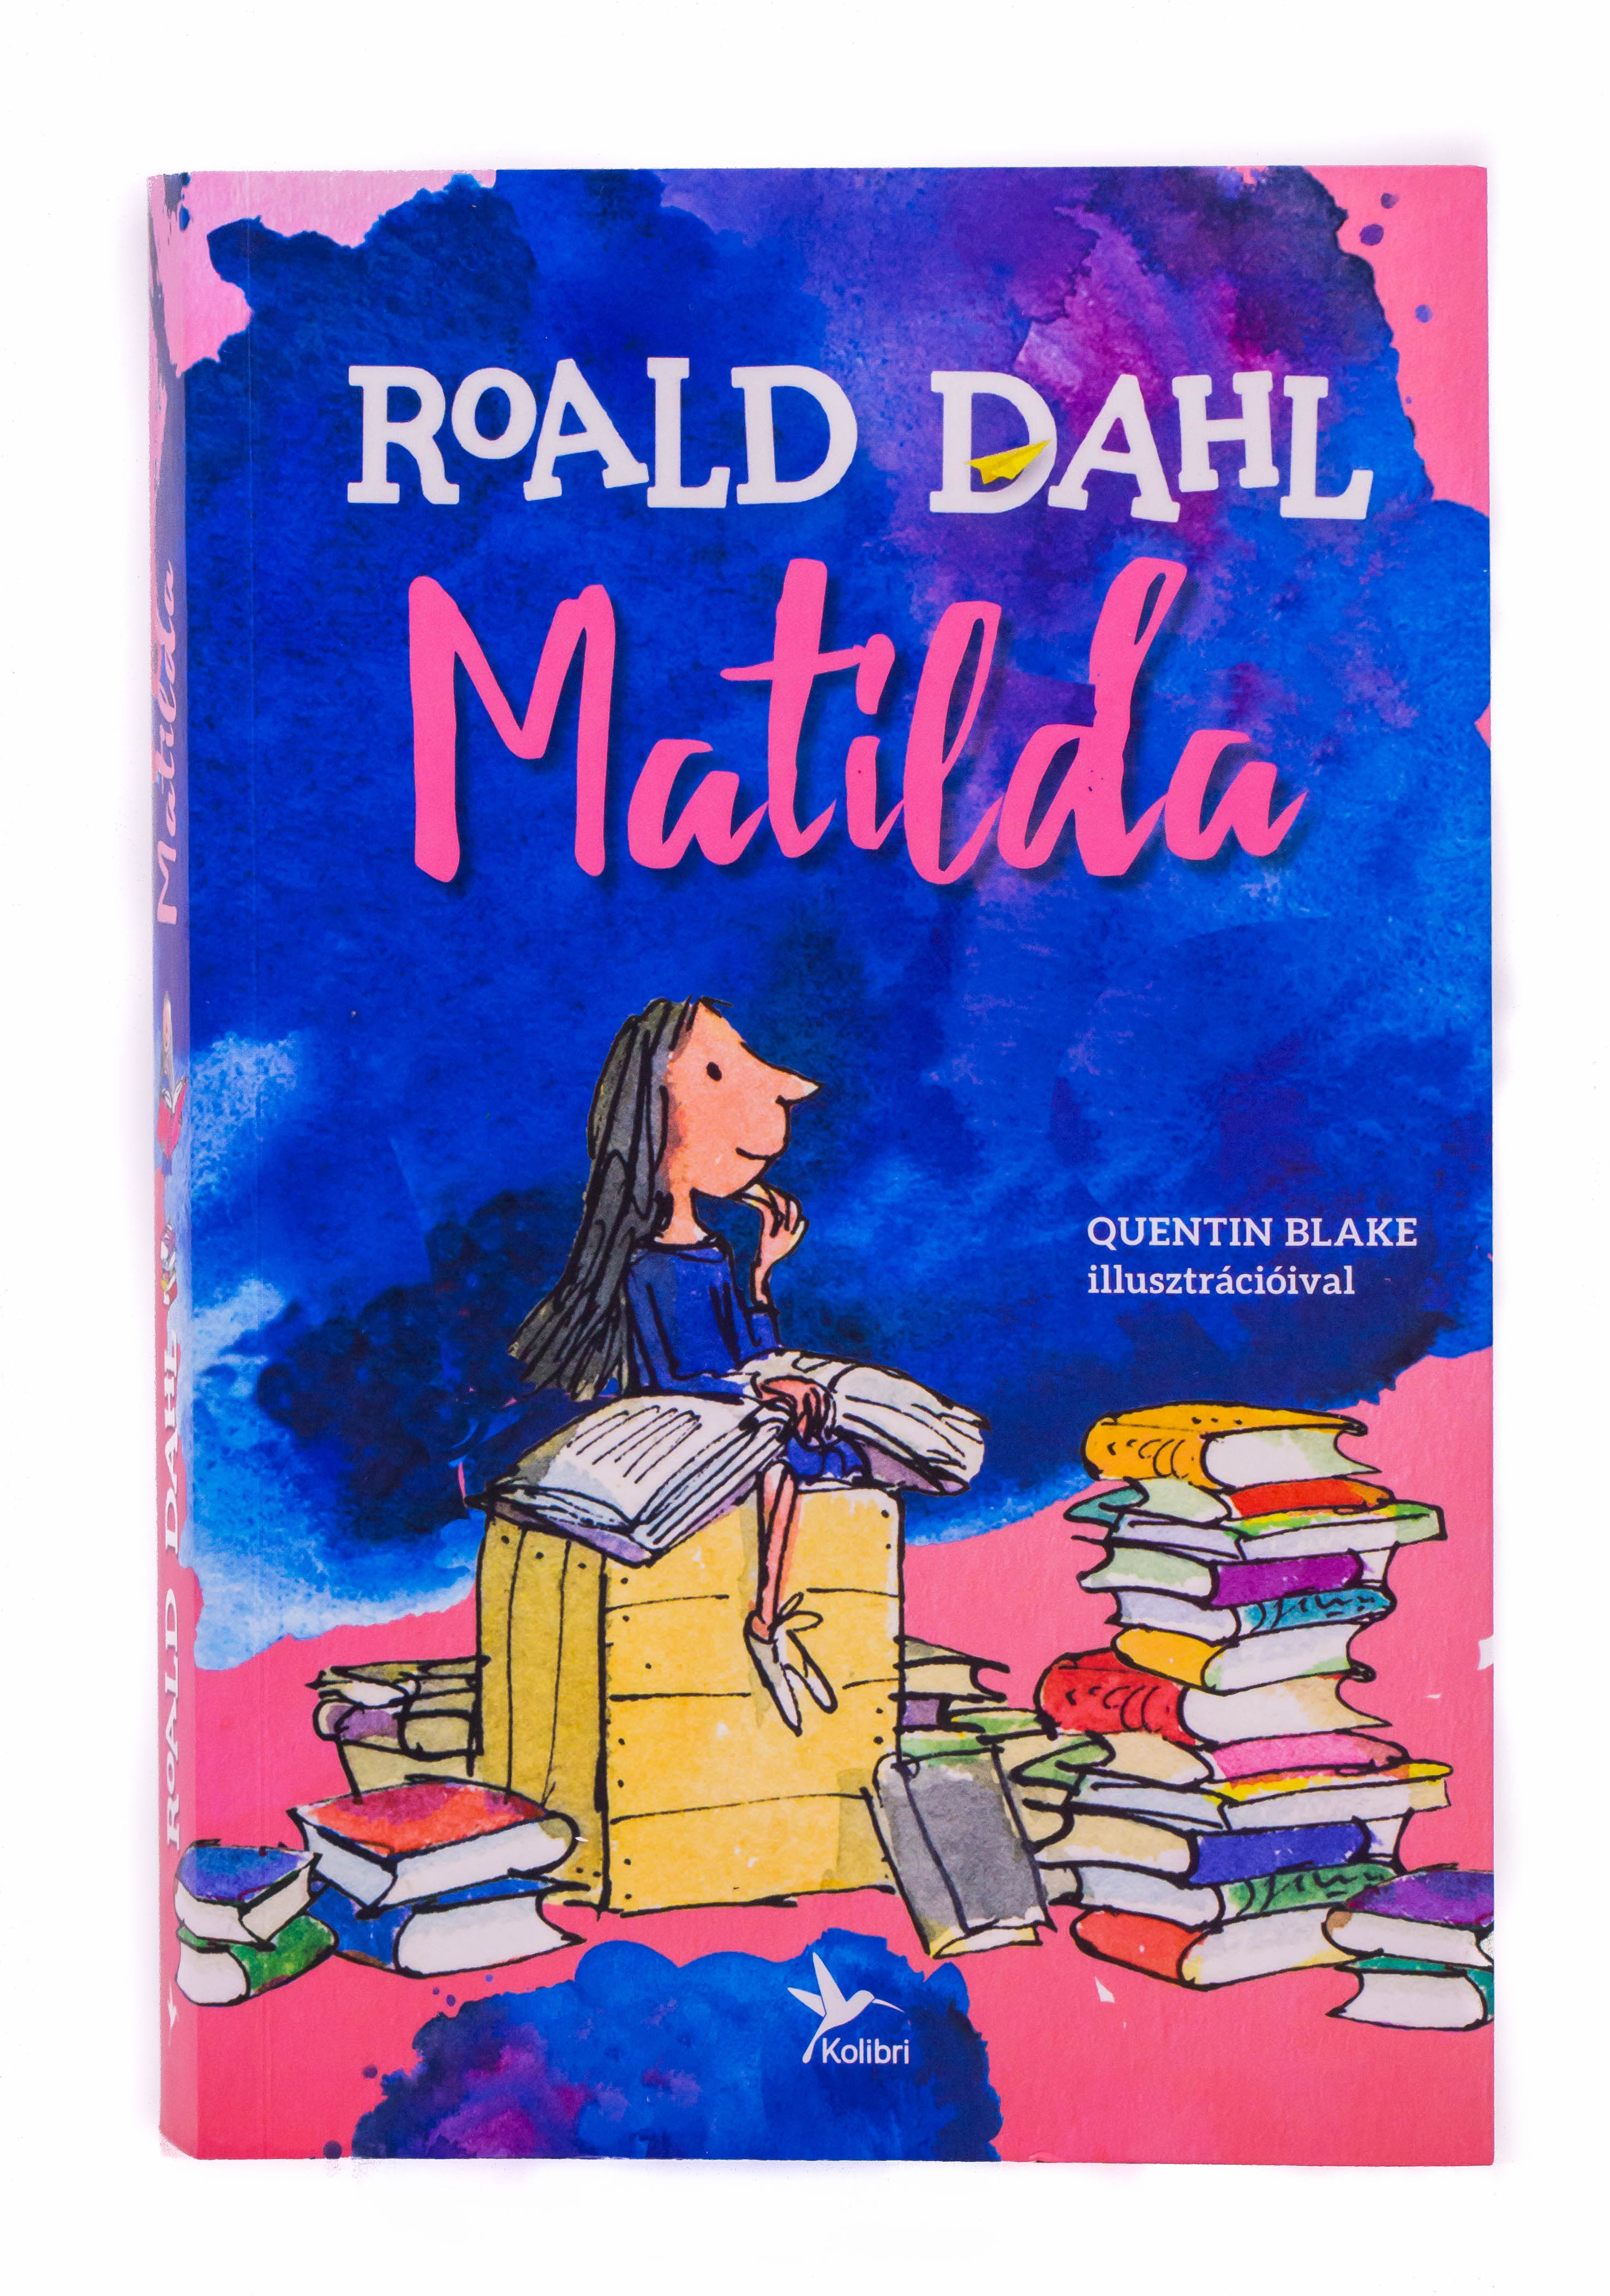 Roald dahl s matilda. Роальд даль. Matilda by Roald Dahl читать на английском.